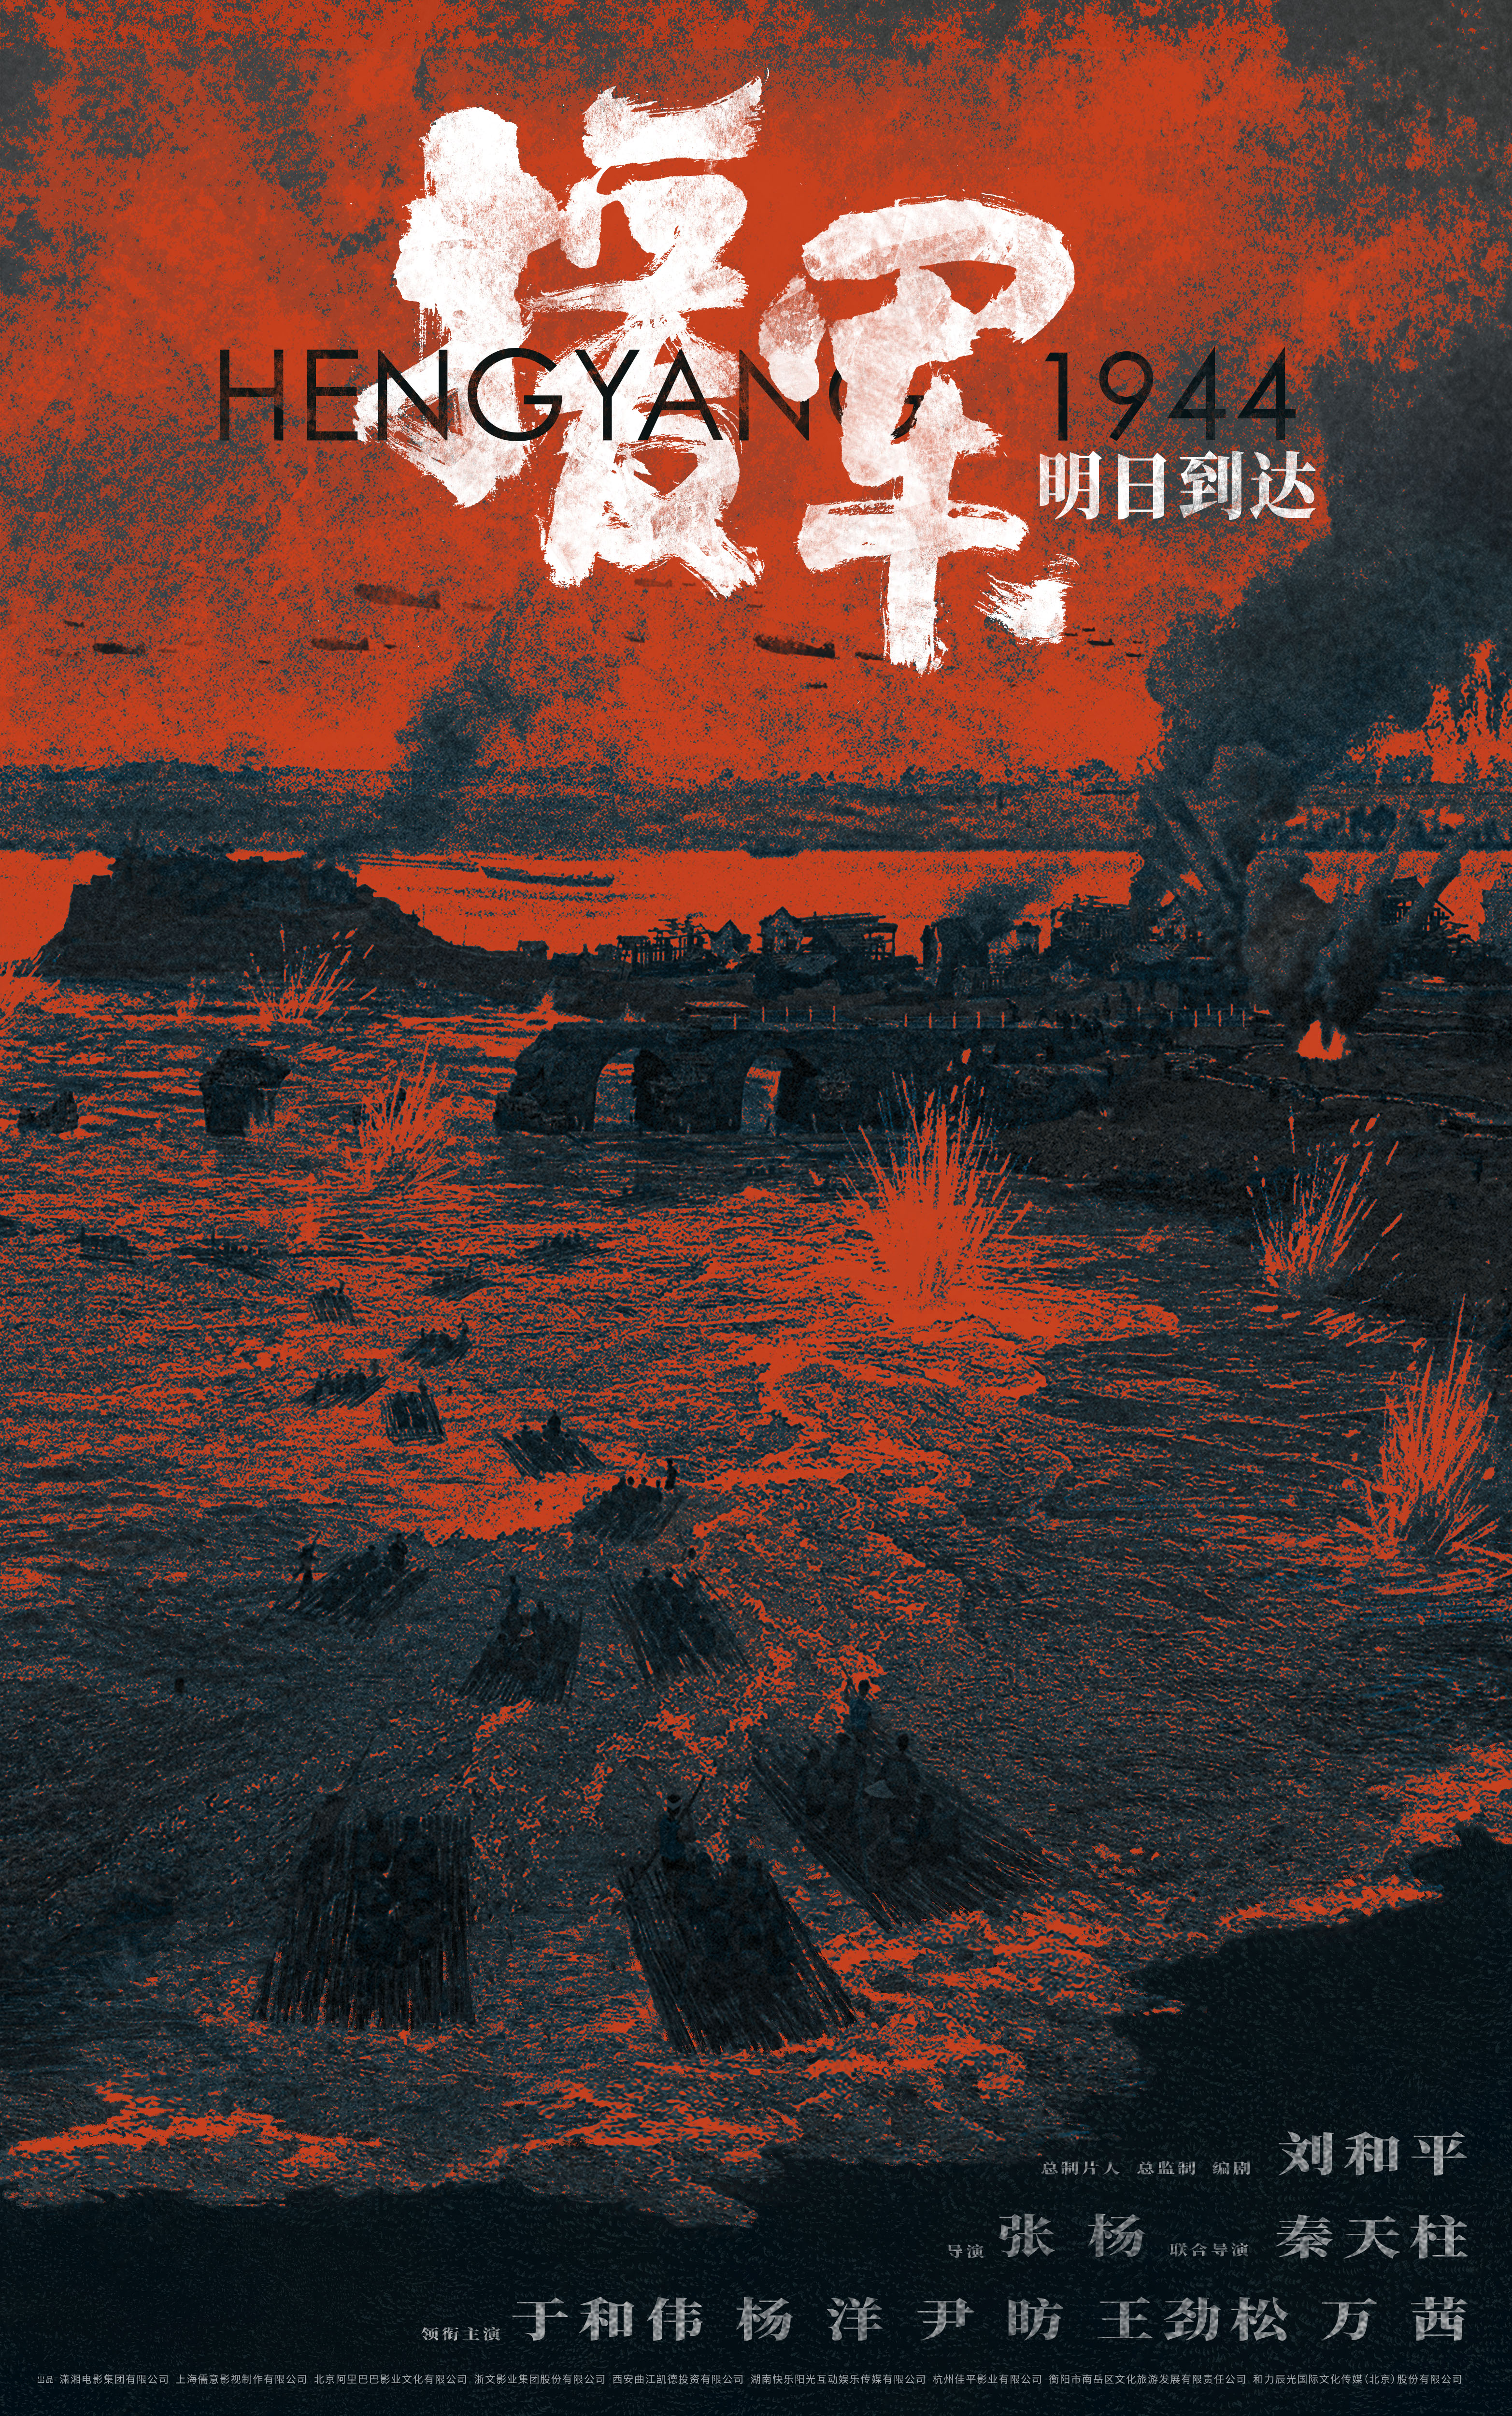 衡阳保卫战背景电影《援军明日到达》宣布开机 于和伟杨洋演绎震撼史诗